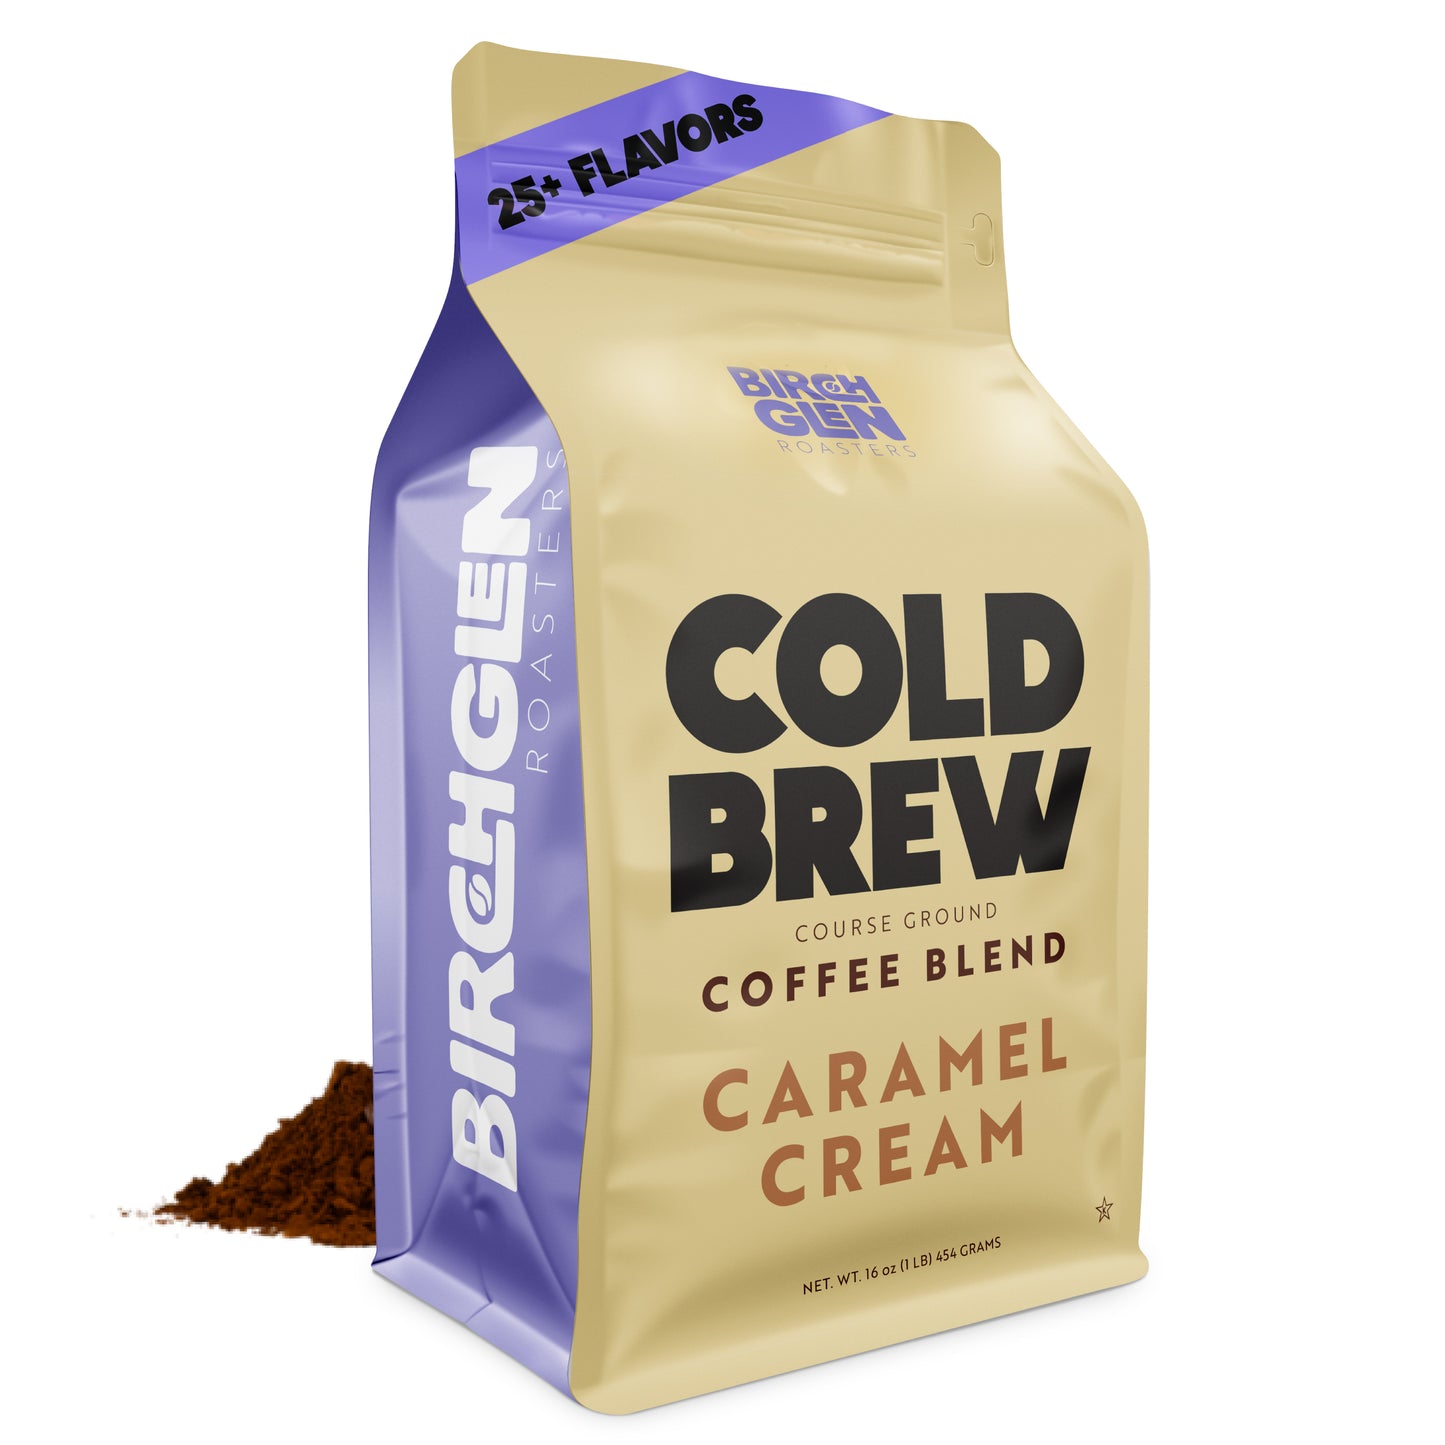 Birch Glen Cold Brew - Caramel Cream